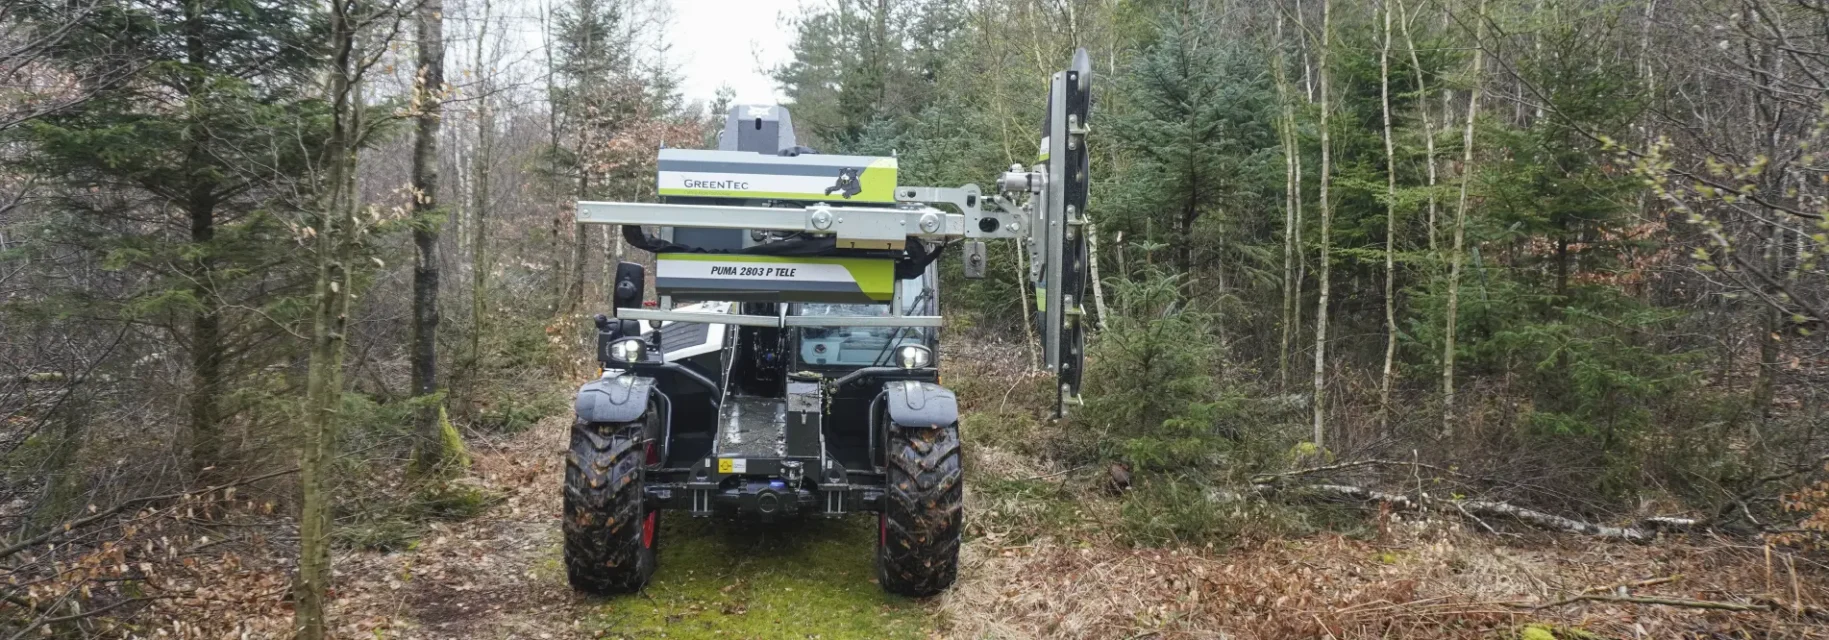 Beskæring af grene i skov med GreenTec maskiner